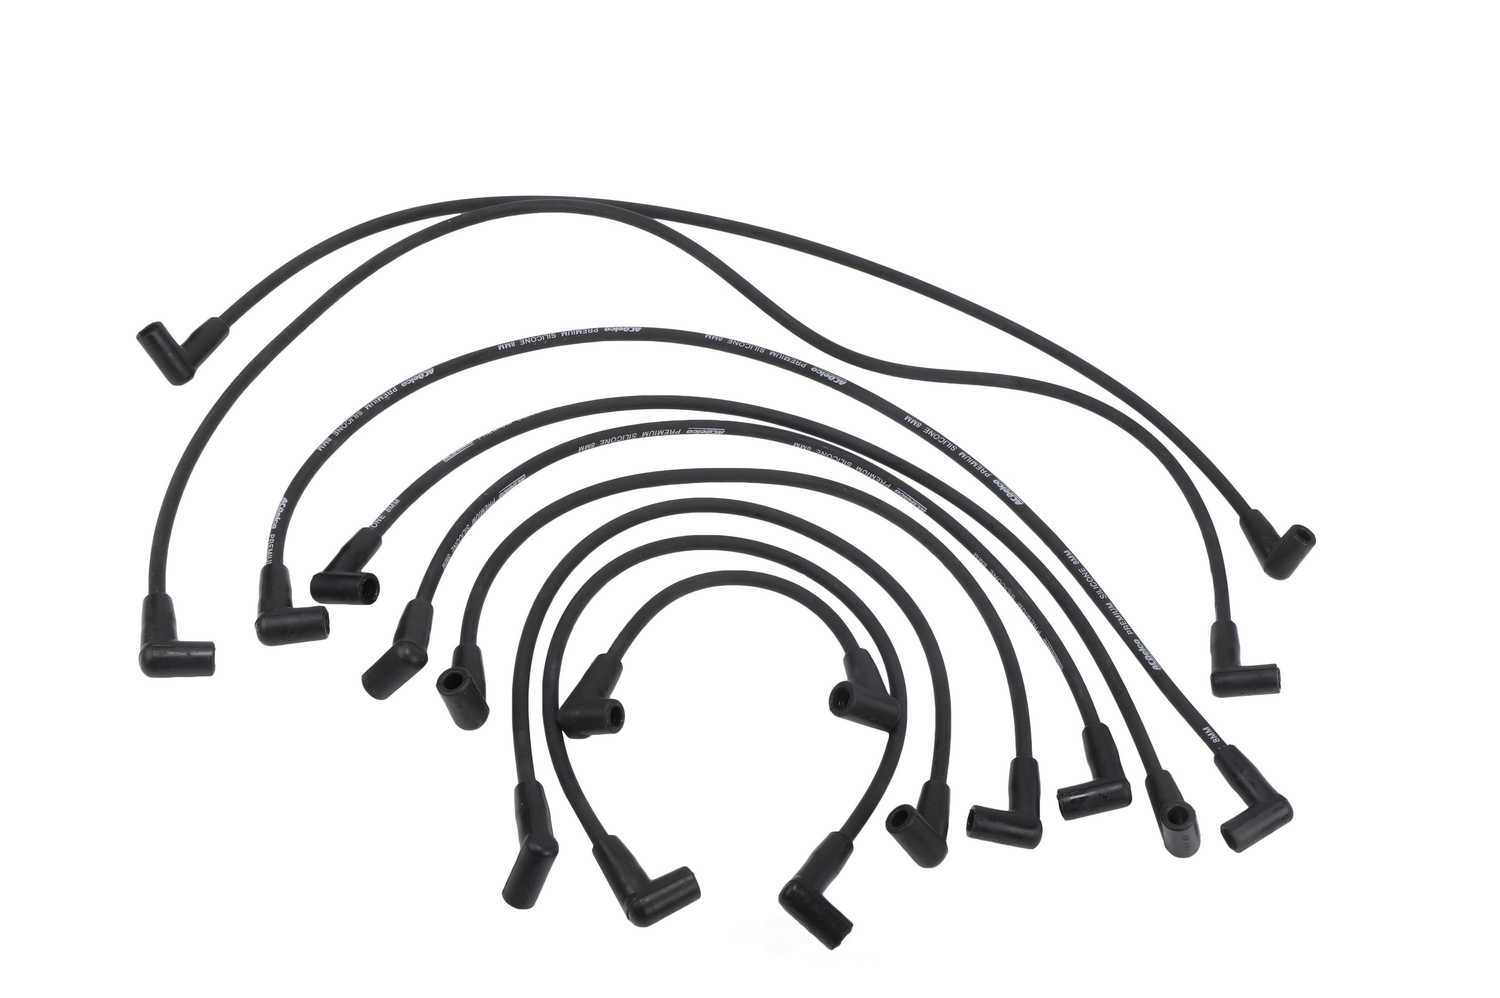 ACDELCO GM ORIGINAL EQUIPMENT - Spark Plug Wire Set - DCB 628M